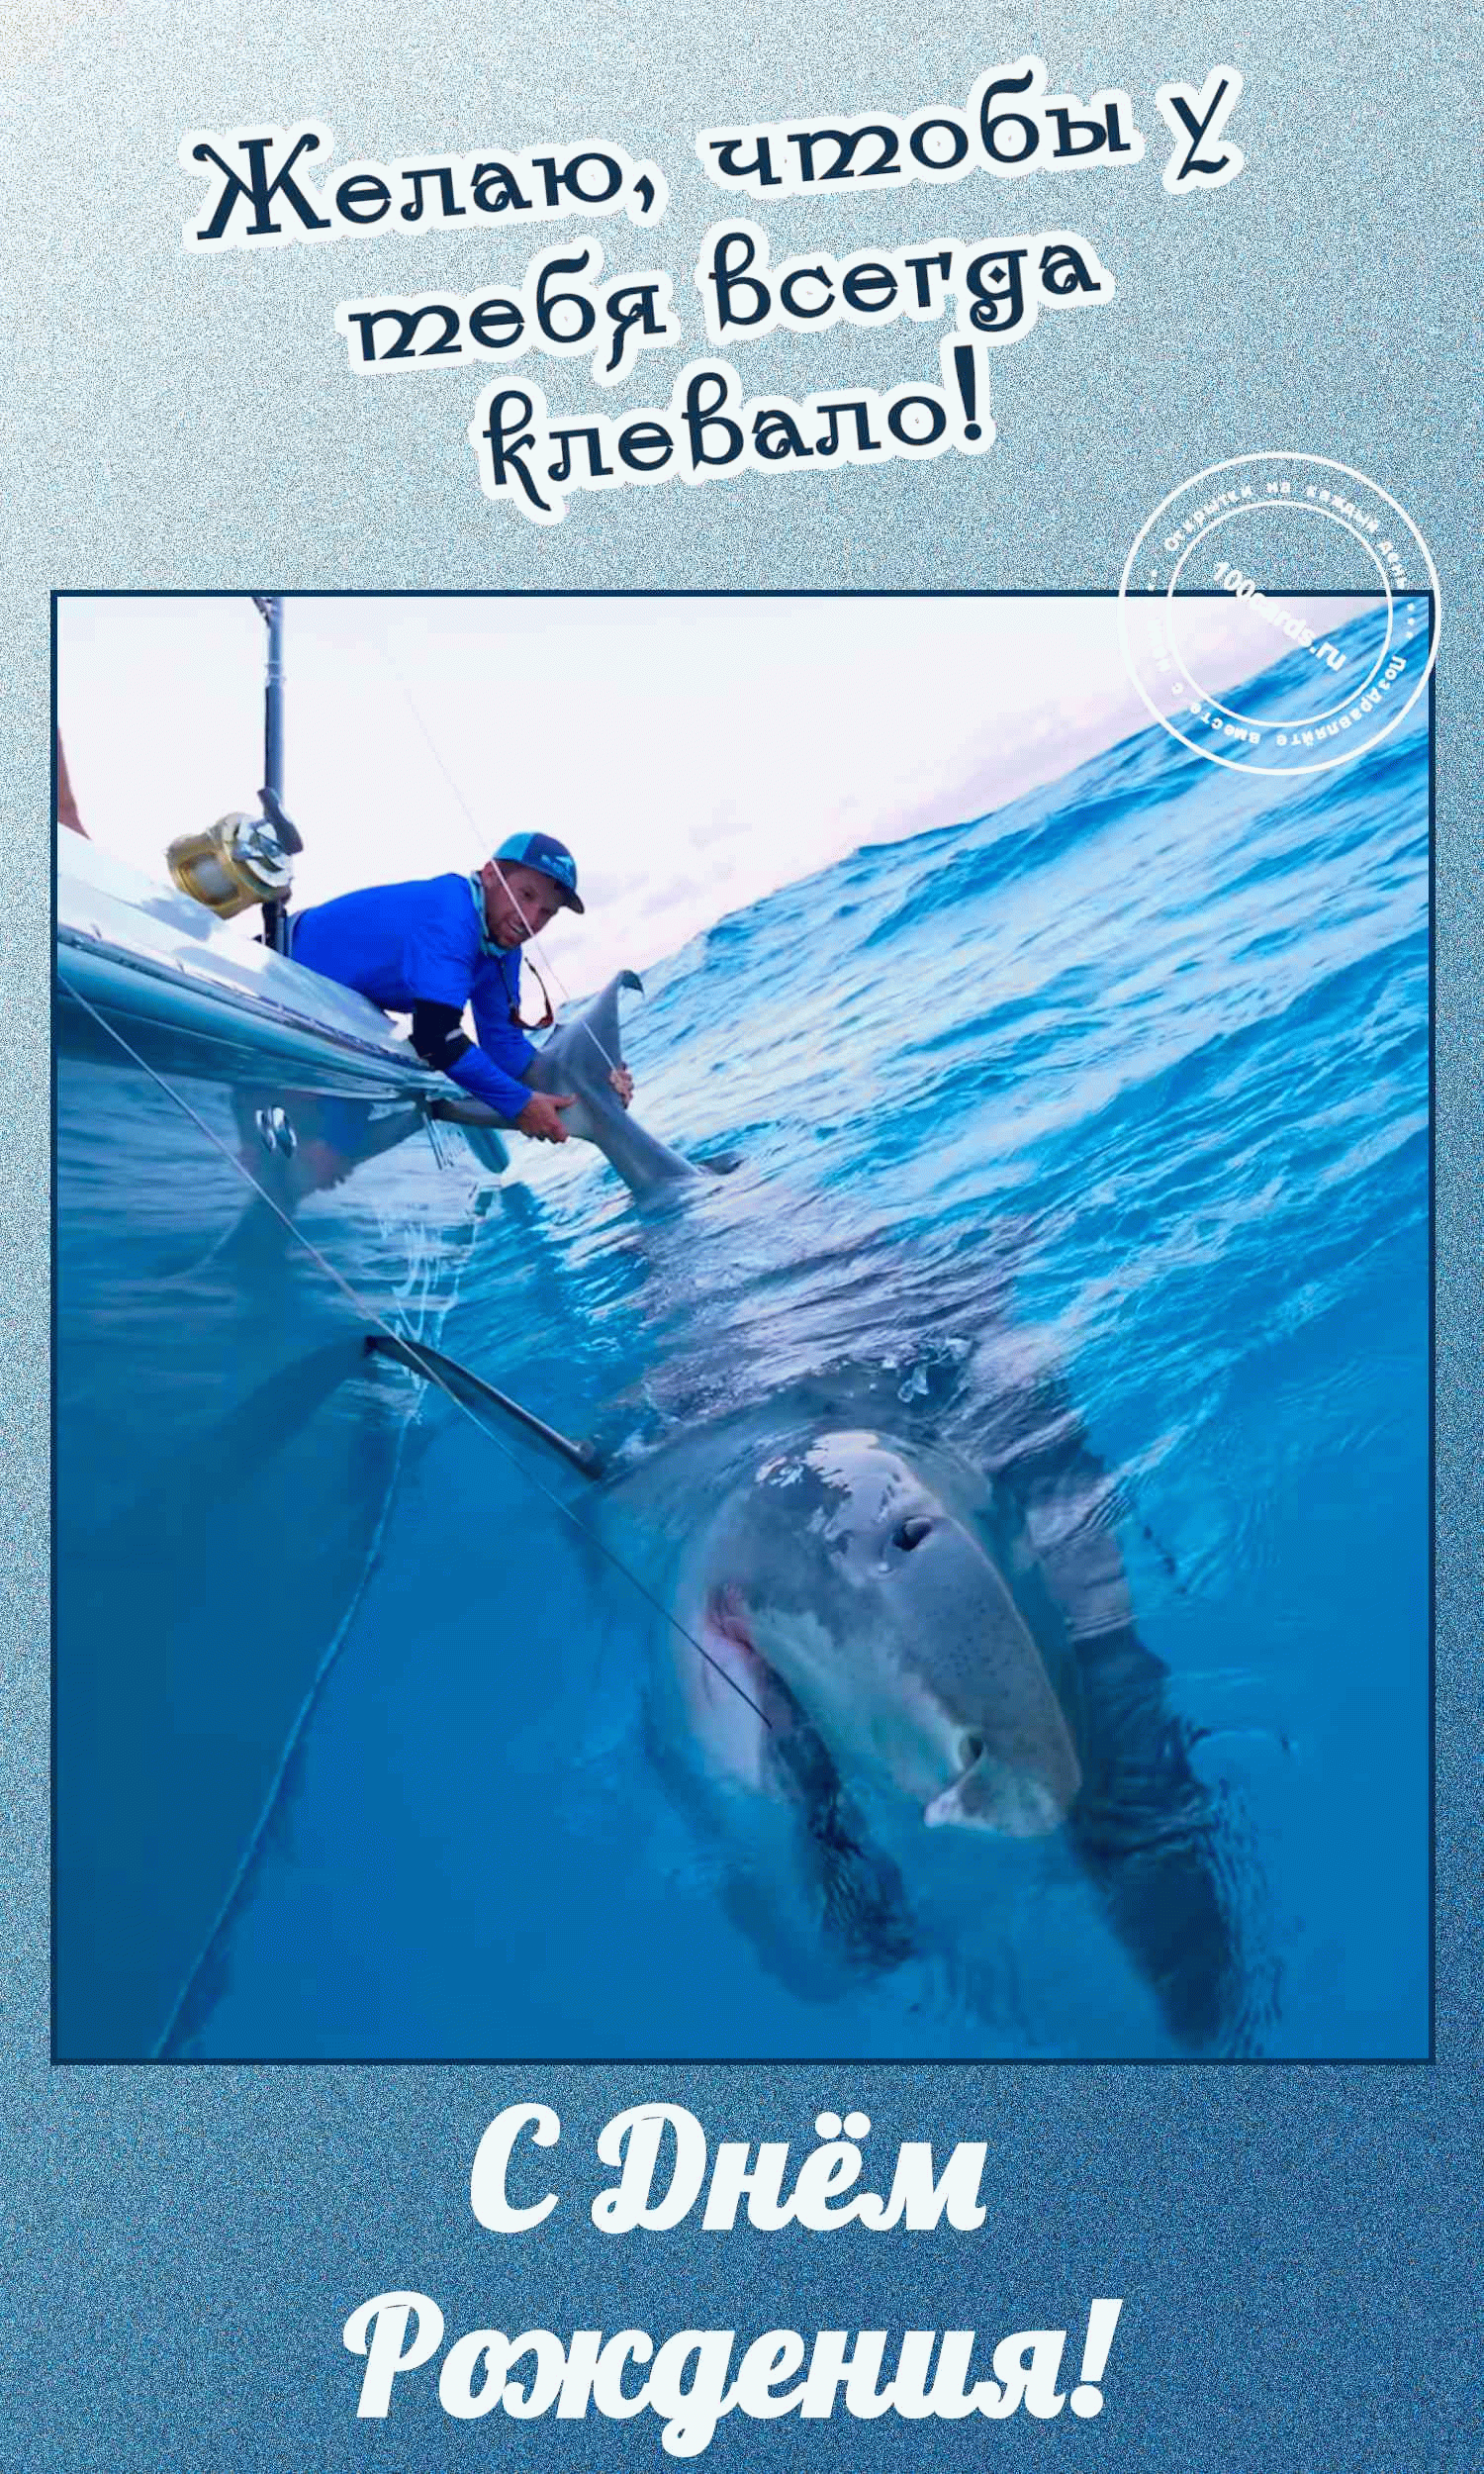 Акула на открытке в день рождения рыбака мужчины с пожеланием клева